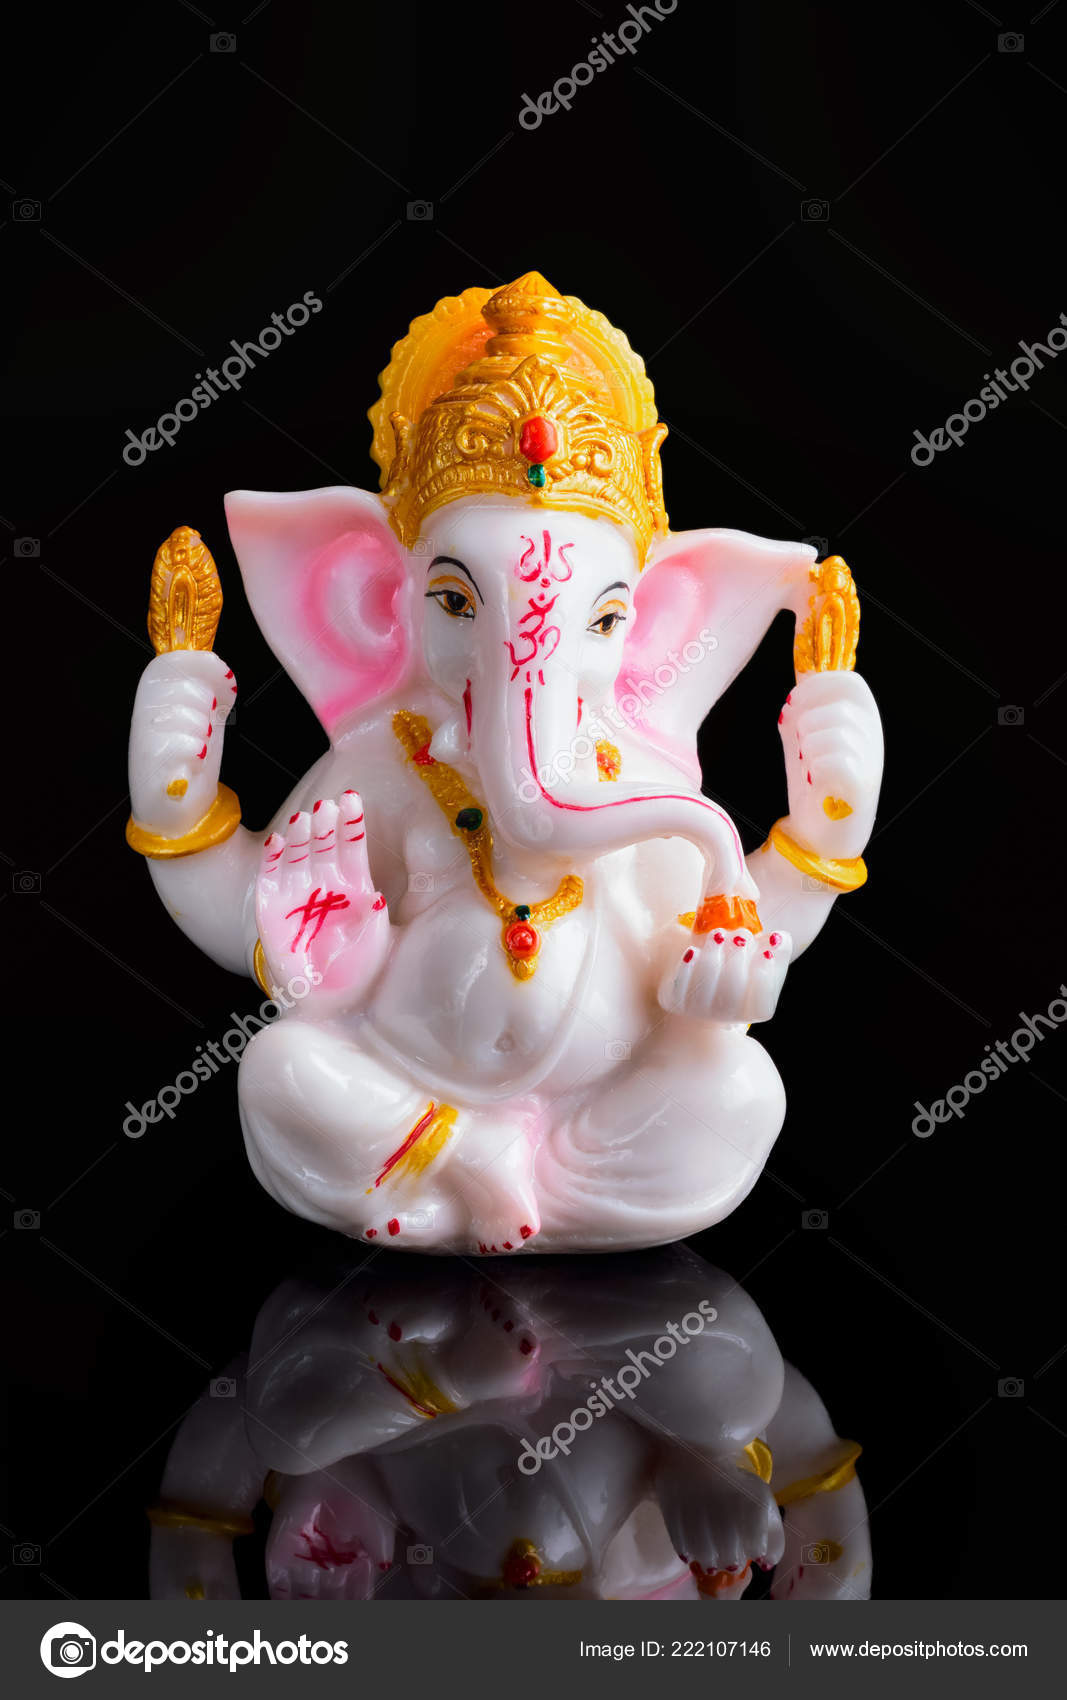 Ganesha on black background Stock Photos, Royalty Free Ganesha on black  background Images | Depositphotos